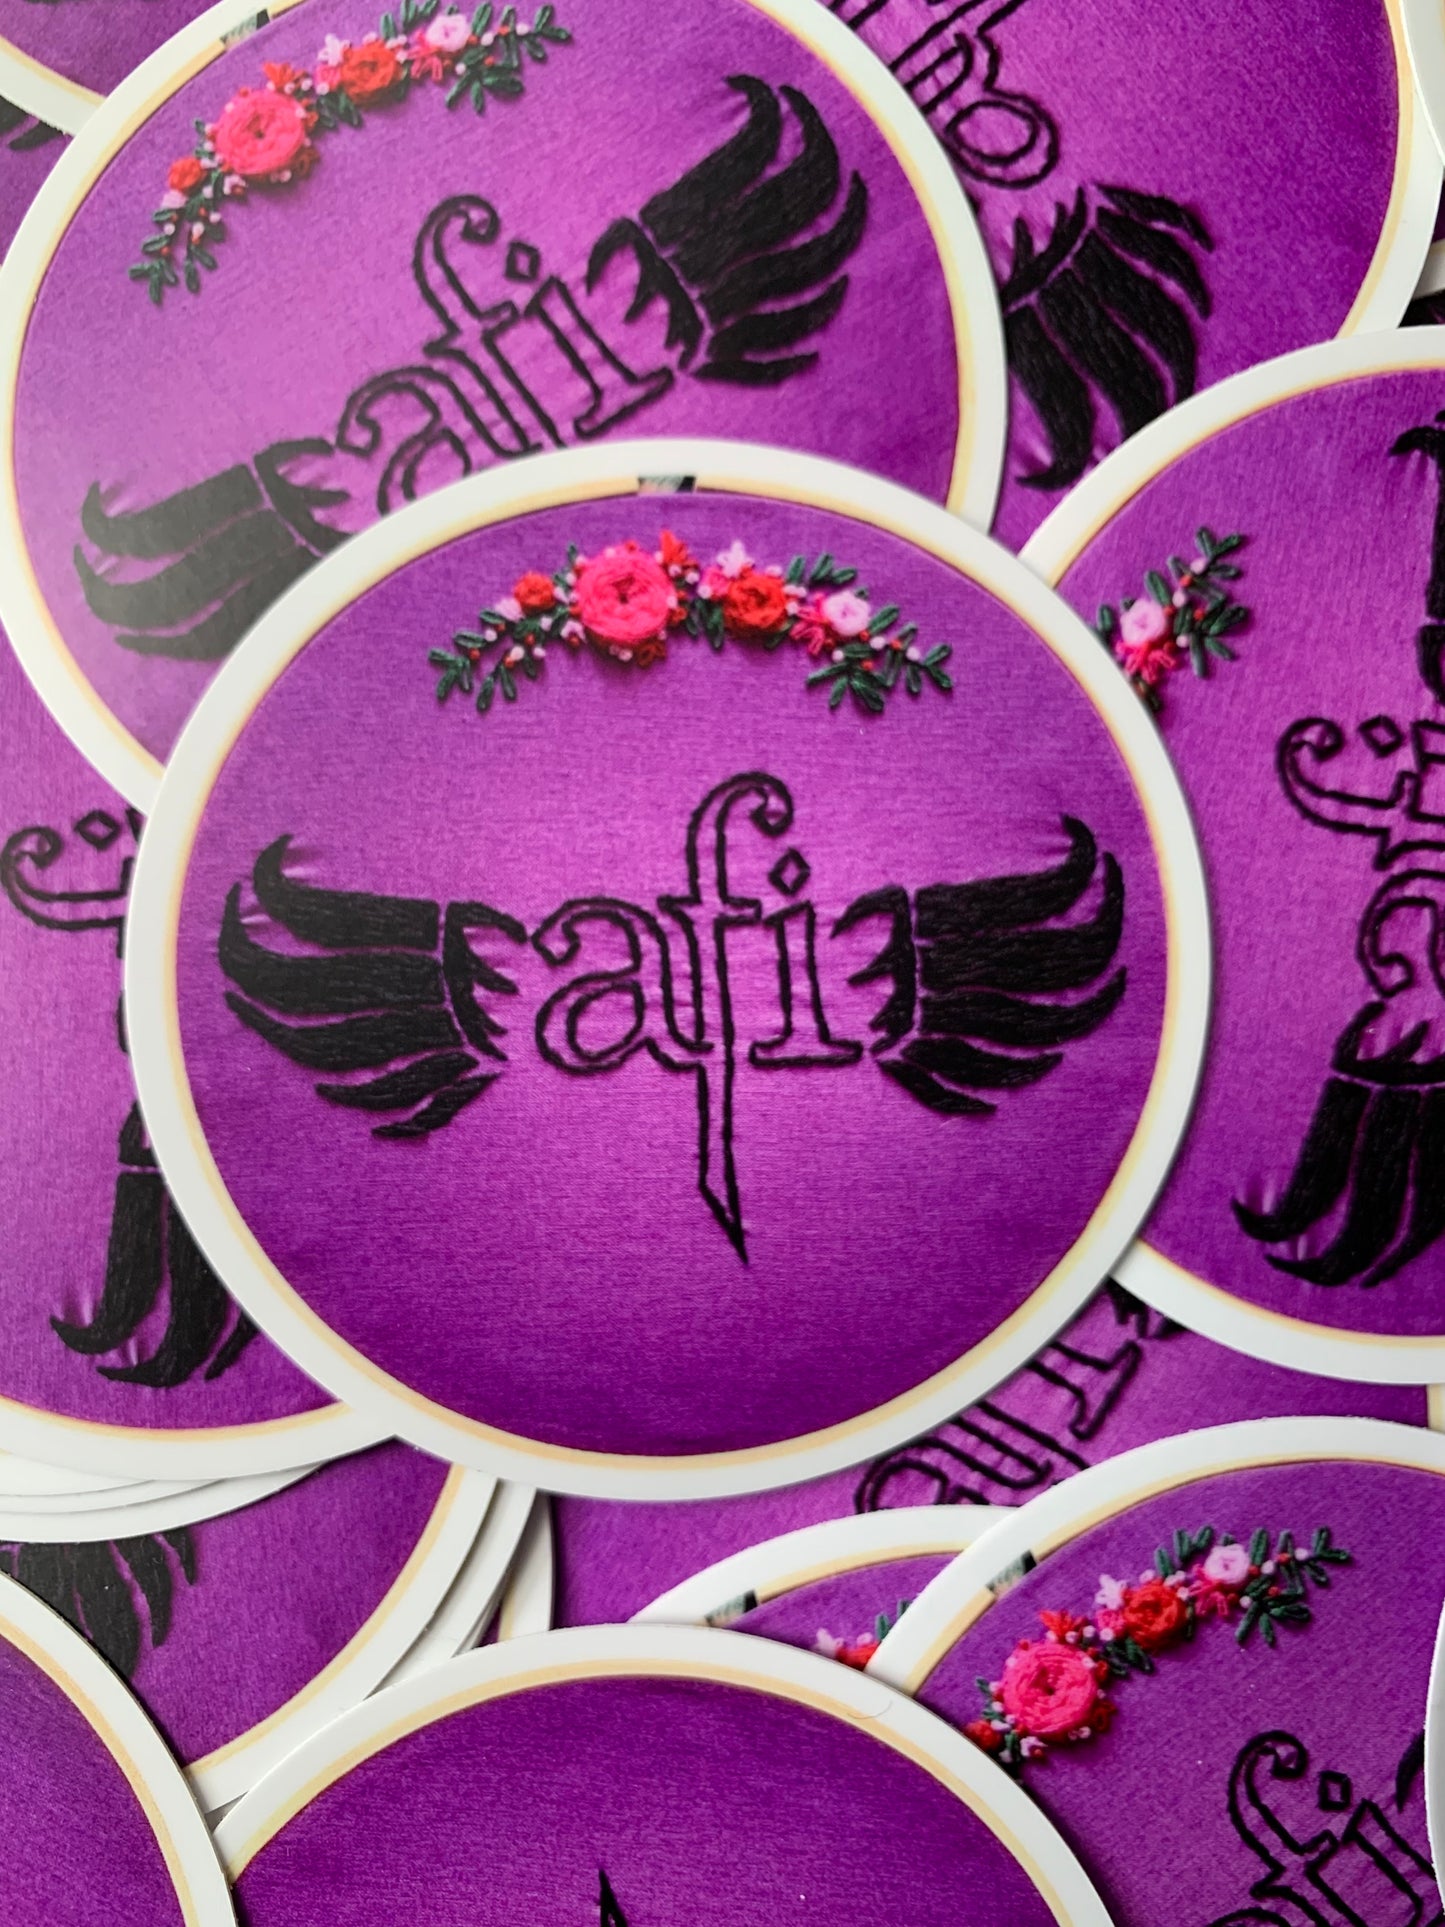 AFI Stickers - A Fire Inside - Fan Art - Embroidery Sticker Design!